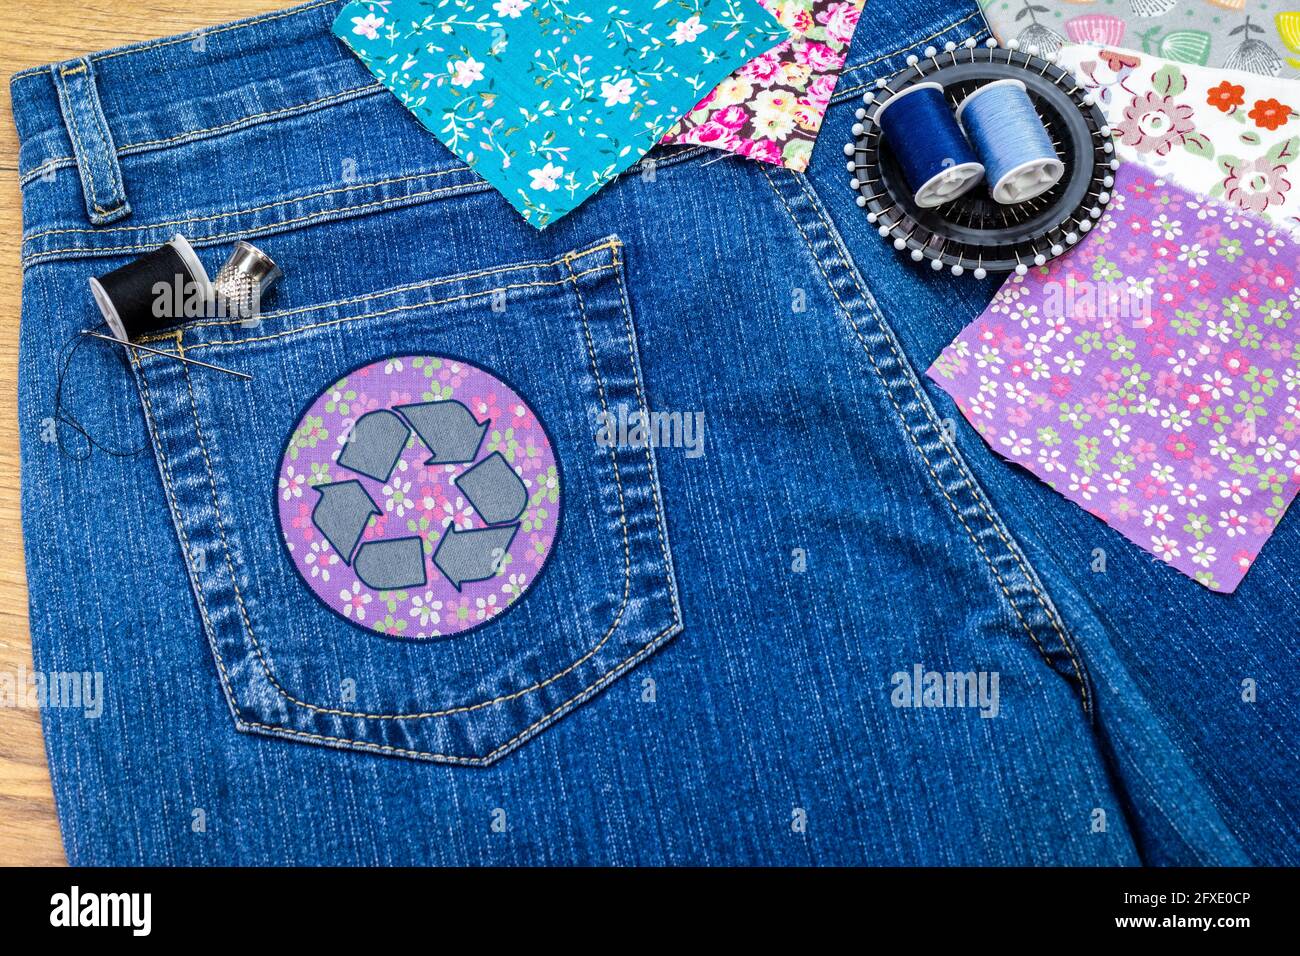 Recyceln Sie Kleidung Icon Patch auf Jeans, nachhaltige Mode sichtbare Ausbesserung Konzept, reparieren, recyceln, wiederverwenden Kleidung und Textilien Abfälle zu reduzieren Stockfoto